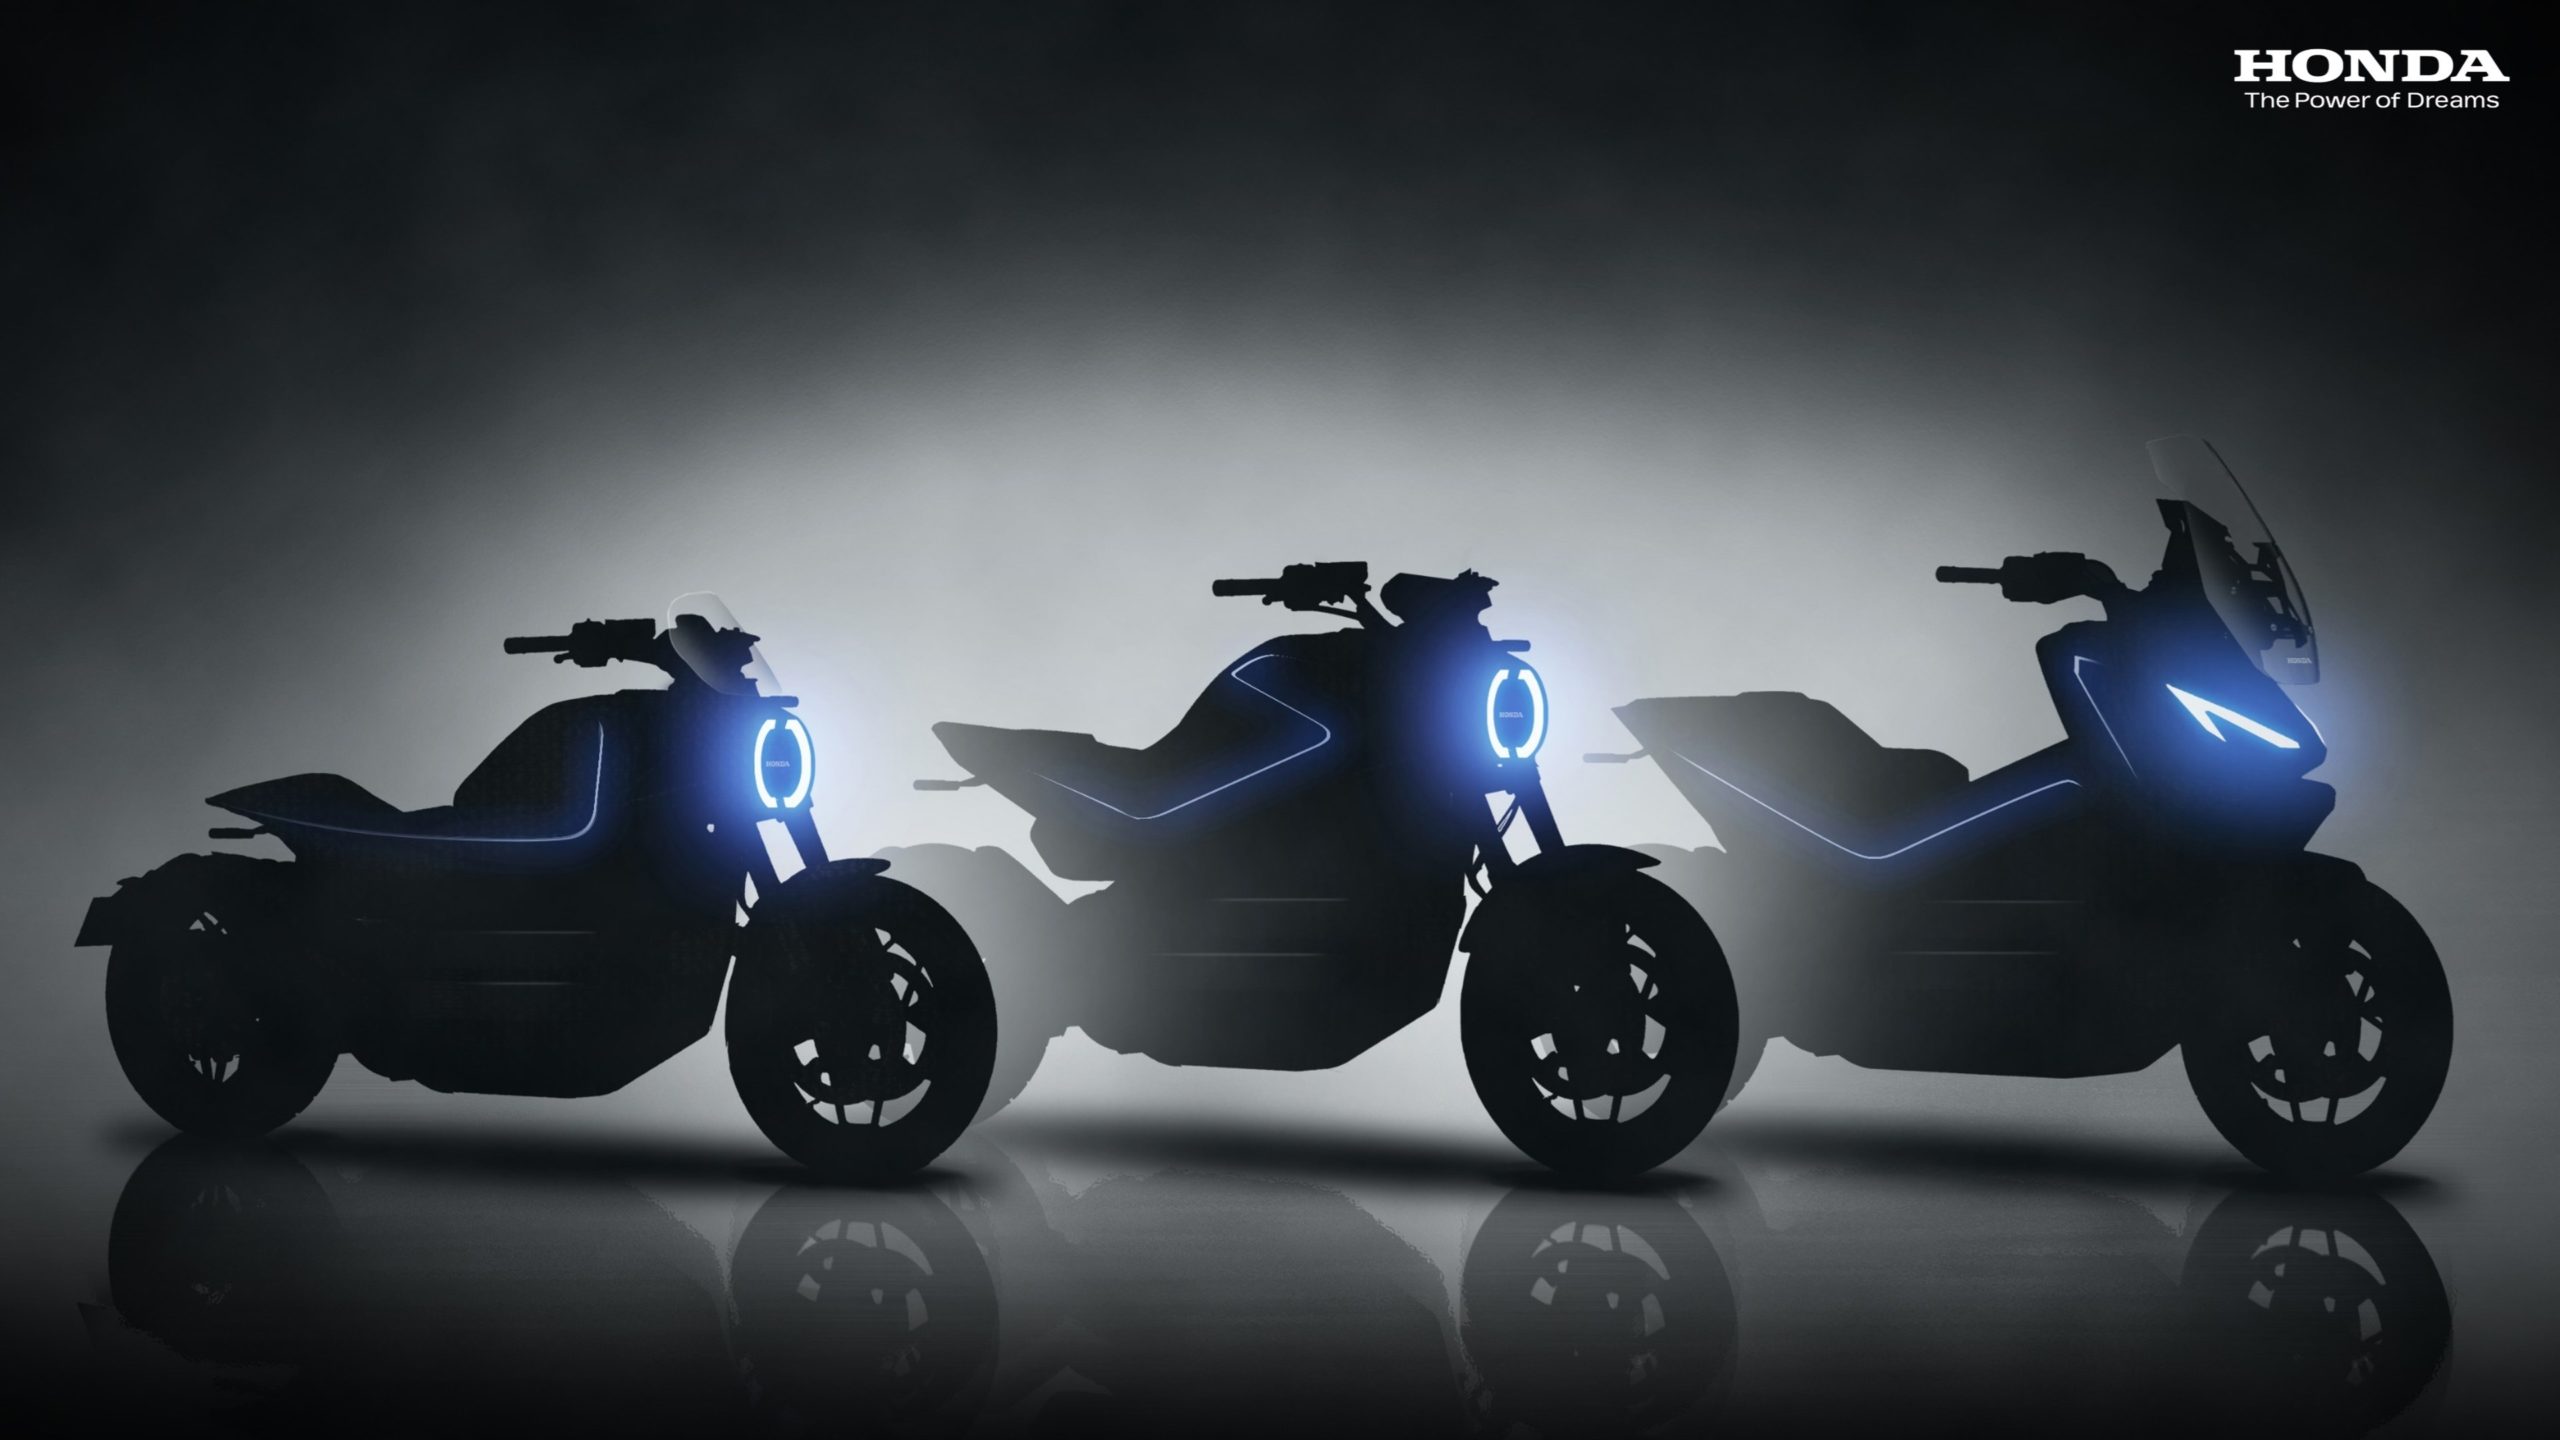 Honda estreia sua moto elétrica nas pistas de motocross com bons resultados, Mobilidade Estadão